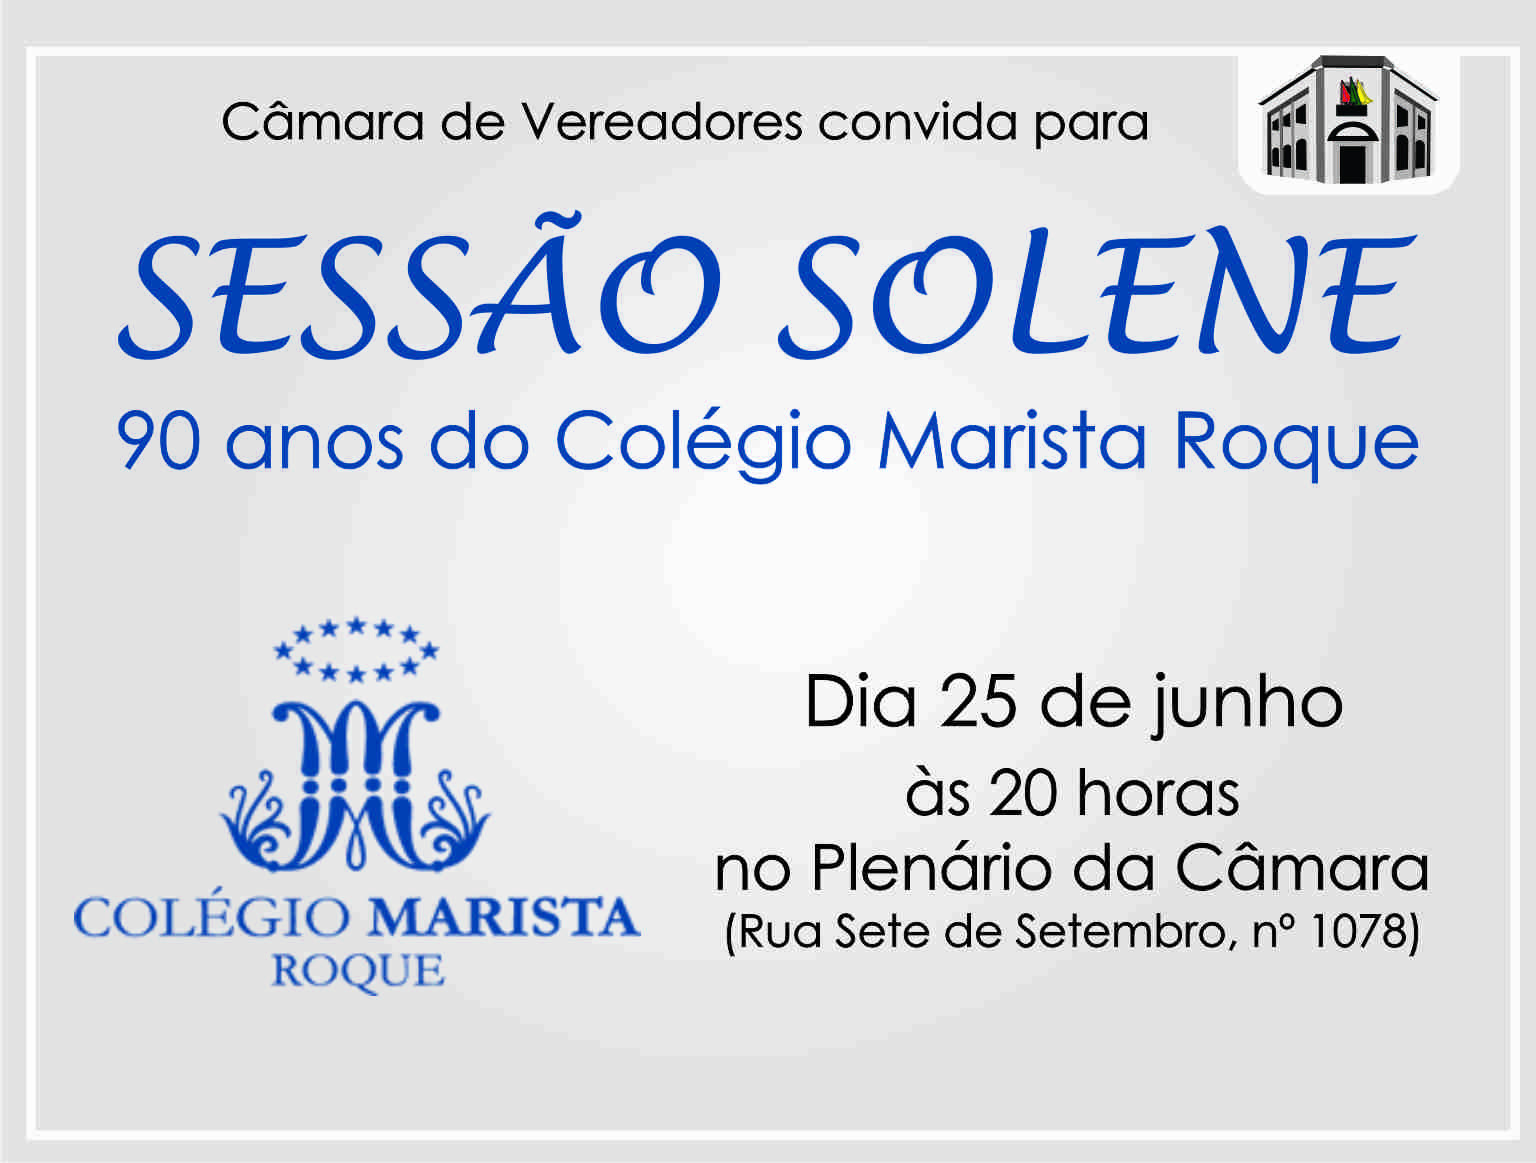 Sessão Solene para os 90 anos do Colégio Marista Roque